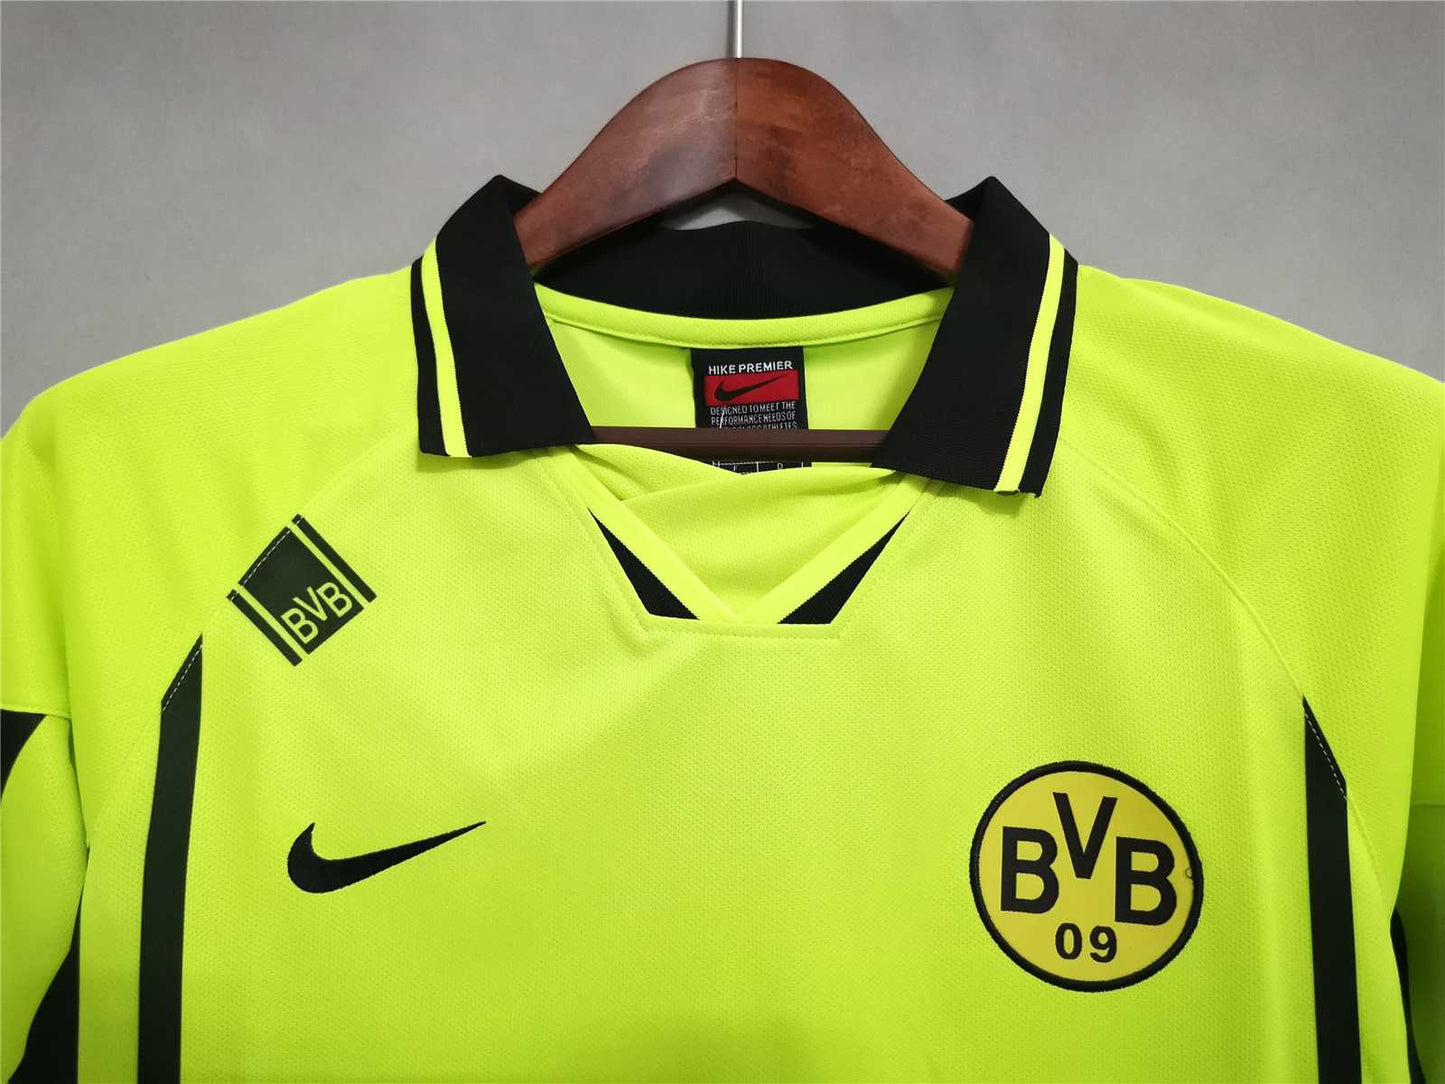 Borussia Dortmund 96-97 Home Shirt